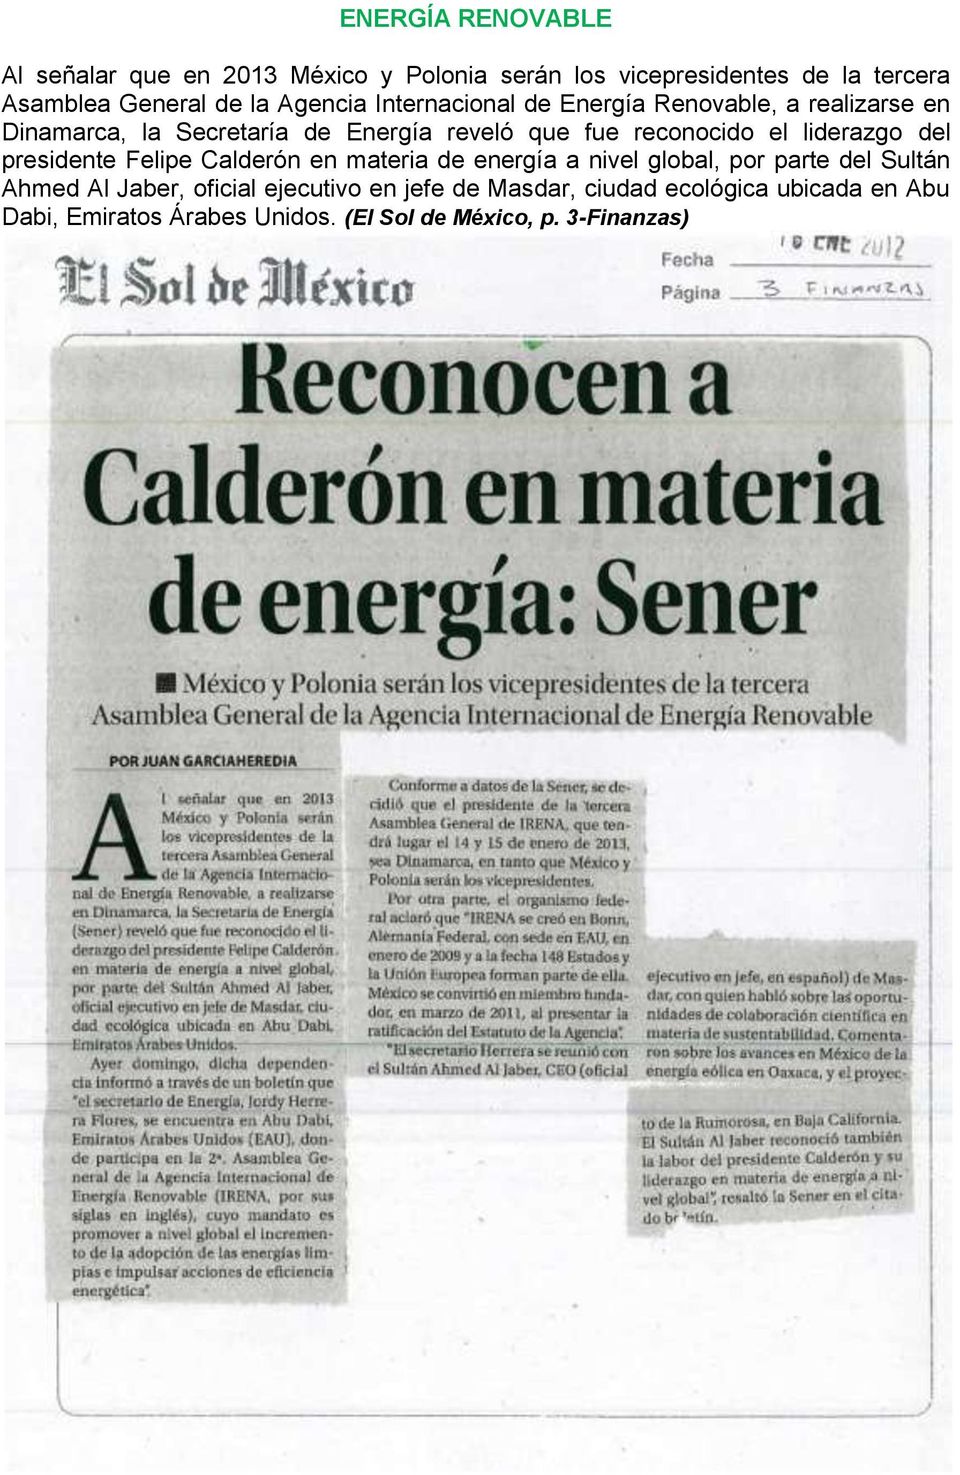 el liderazgo del presidente Felipe Calderón en materia de energía a nivel global, por parte del Sultán Ahmed Al Jaber,